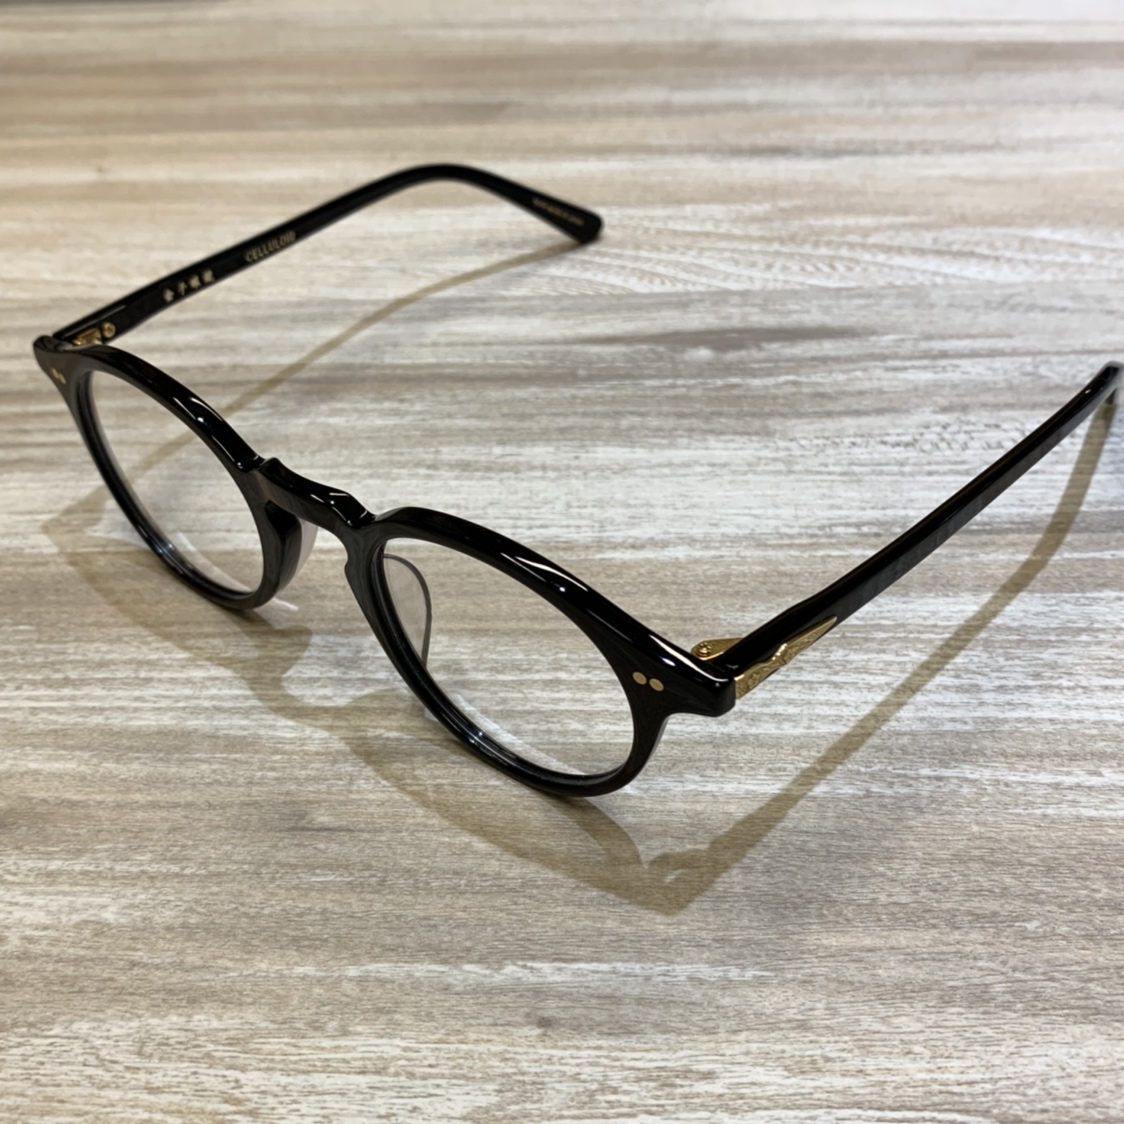 金子眼鏡のKCGｰ08 CELLULOID ボストン眼鏡の買取実績です。